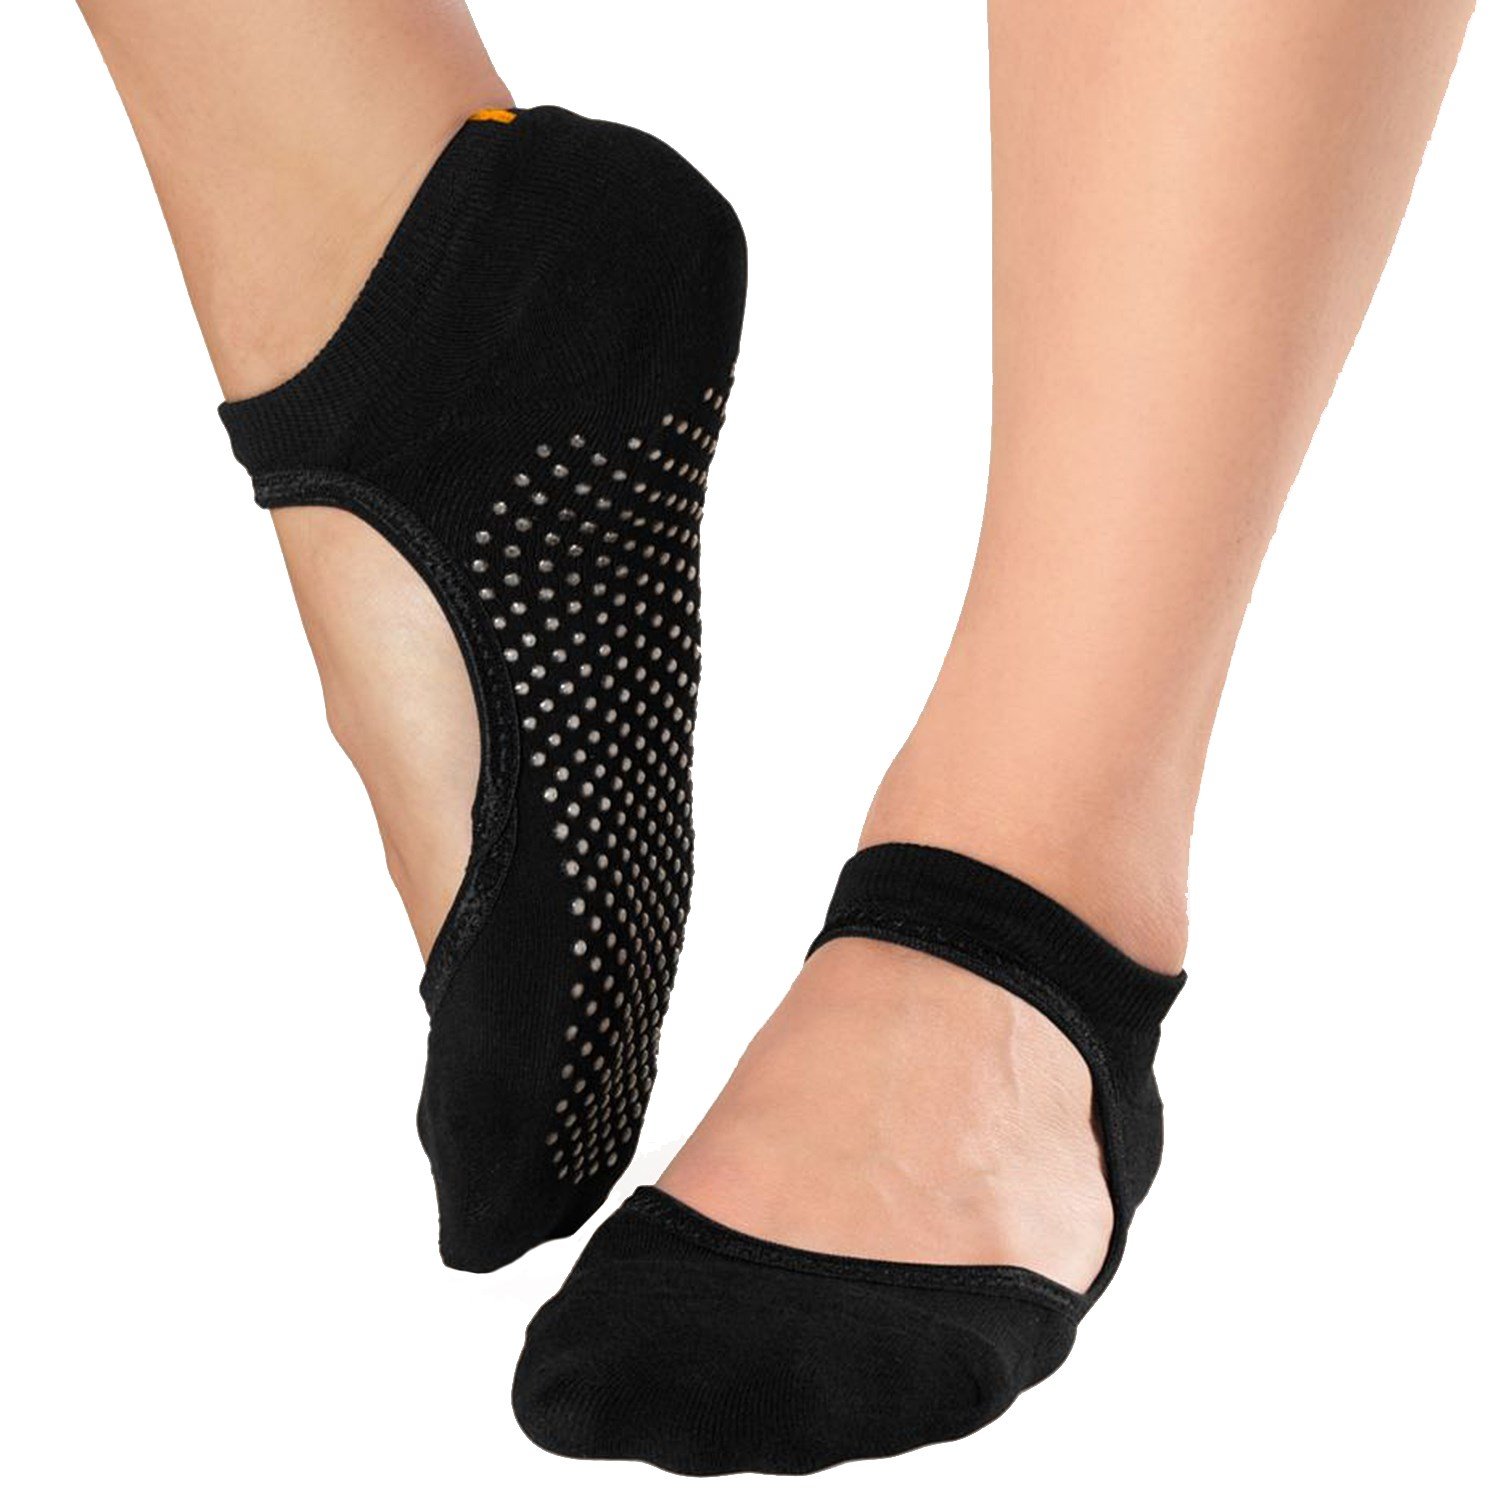 Lucy Ballet Grip Socks - Women's